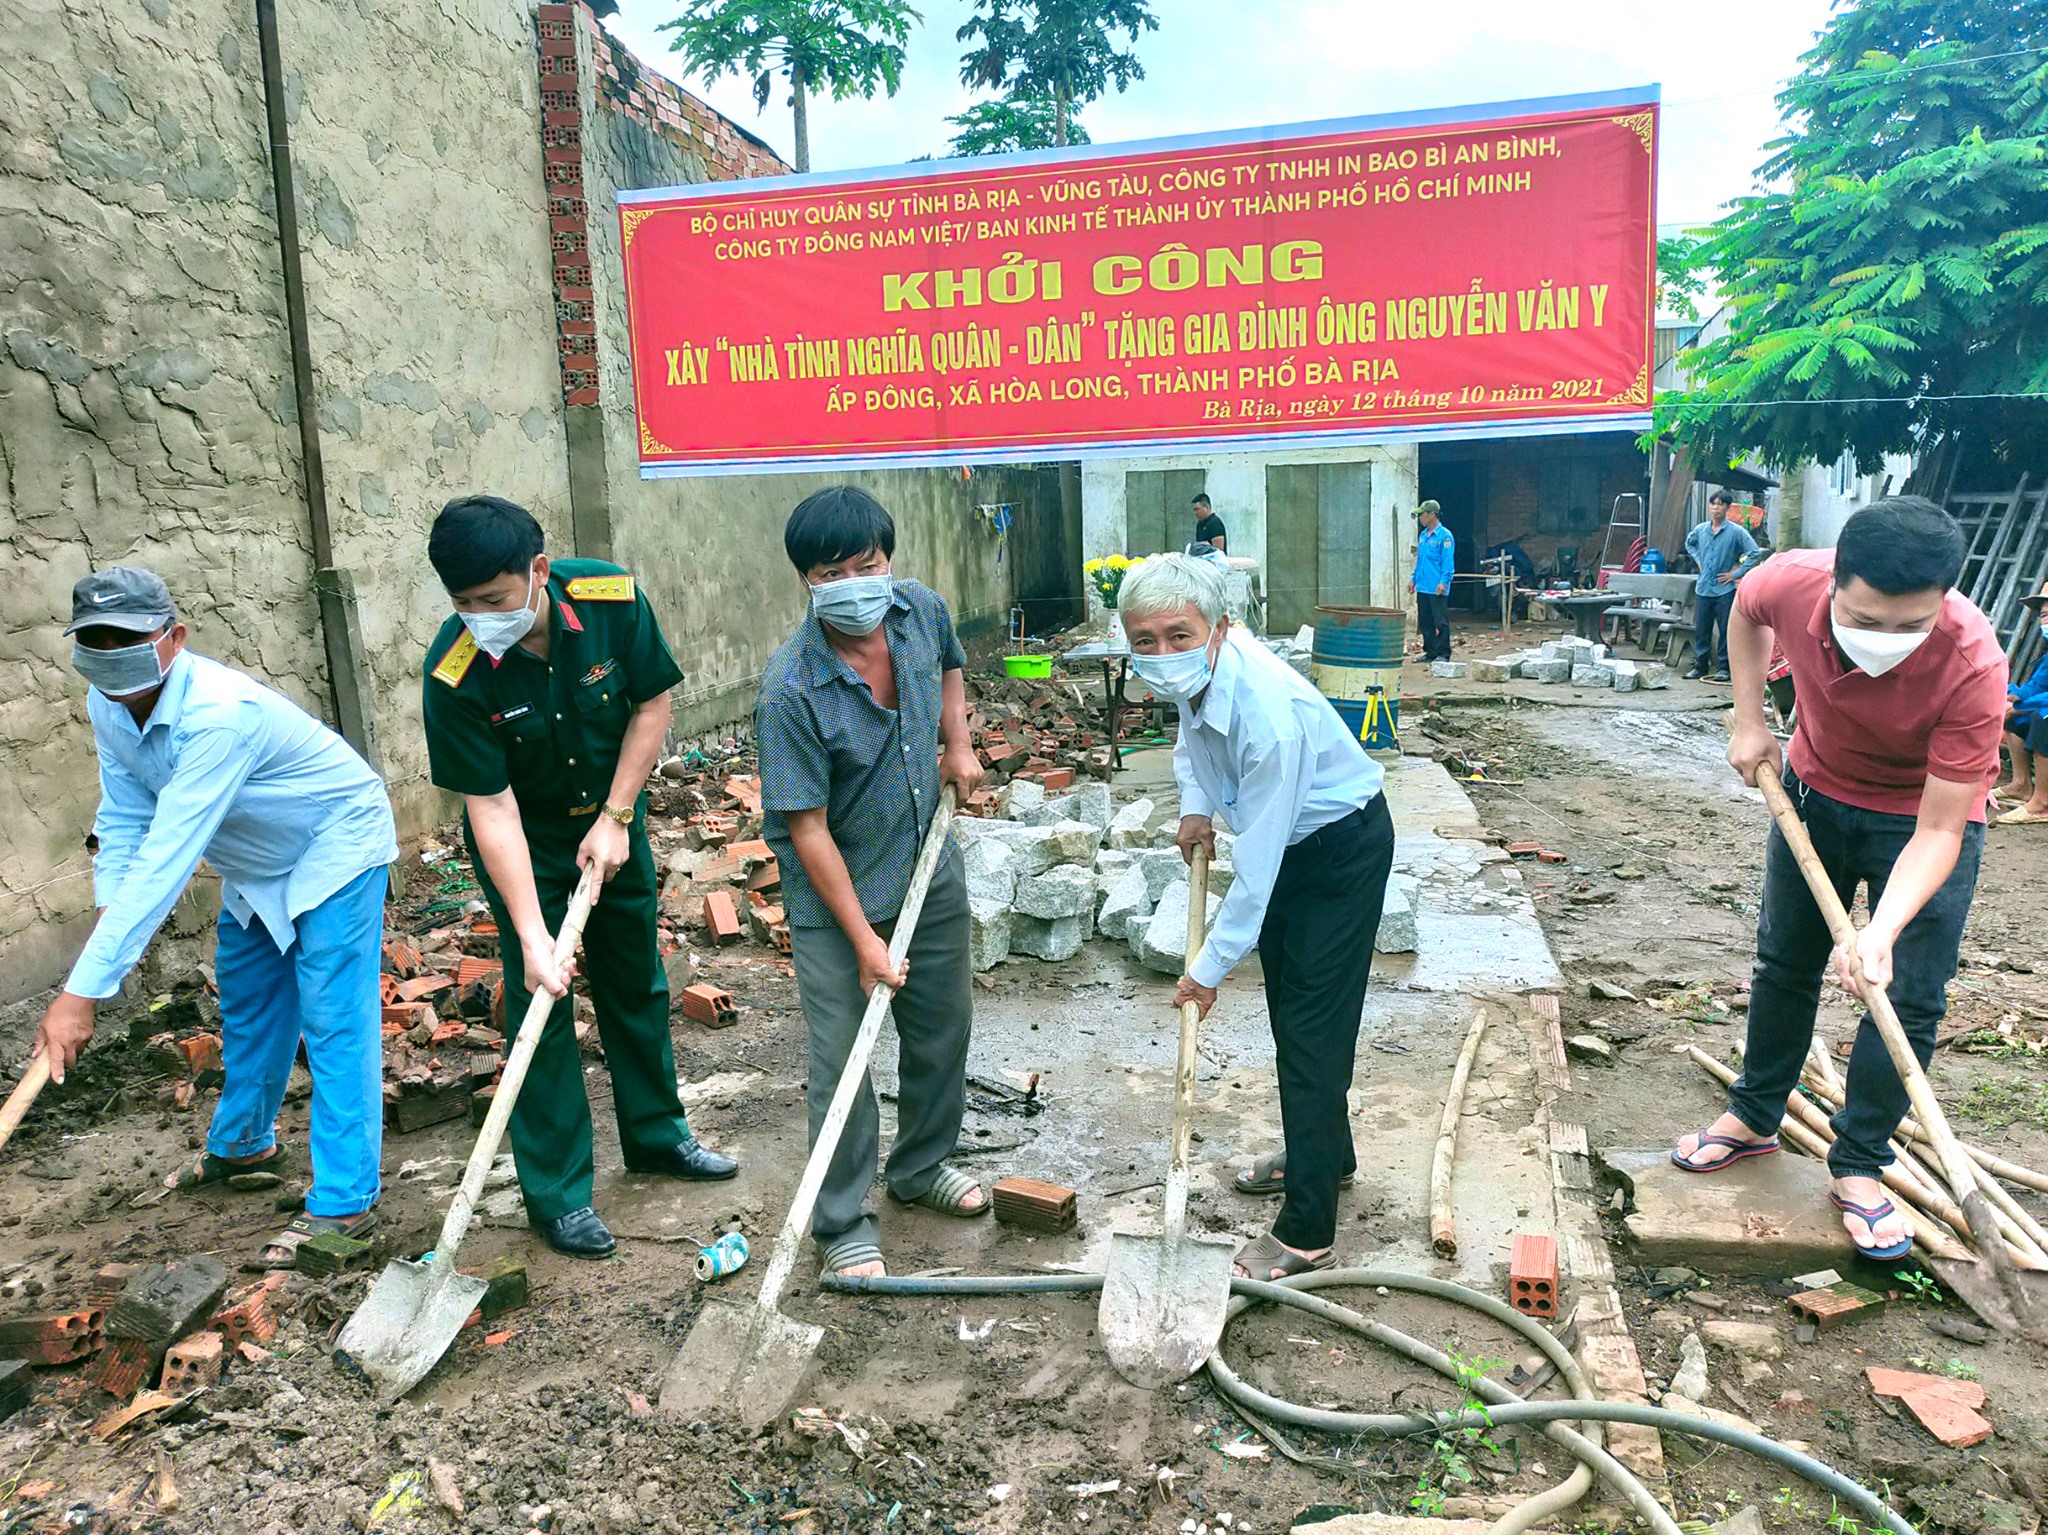 Đại diện Bộ CHQS tỉnh, các nhà tài trợ và và chính quyền địa phương tham gia lễ động thổ xây “Nhà tình nghĩa quân - dân” cho gia đình ông Nguyễn Văn Y.